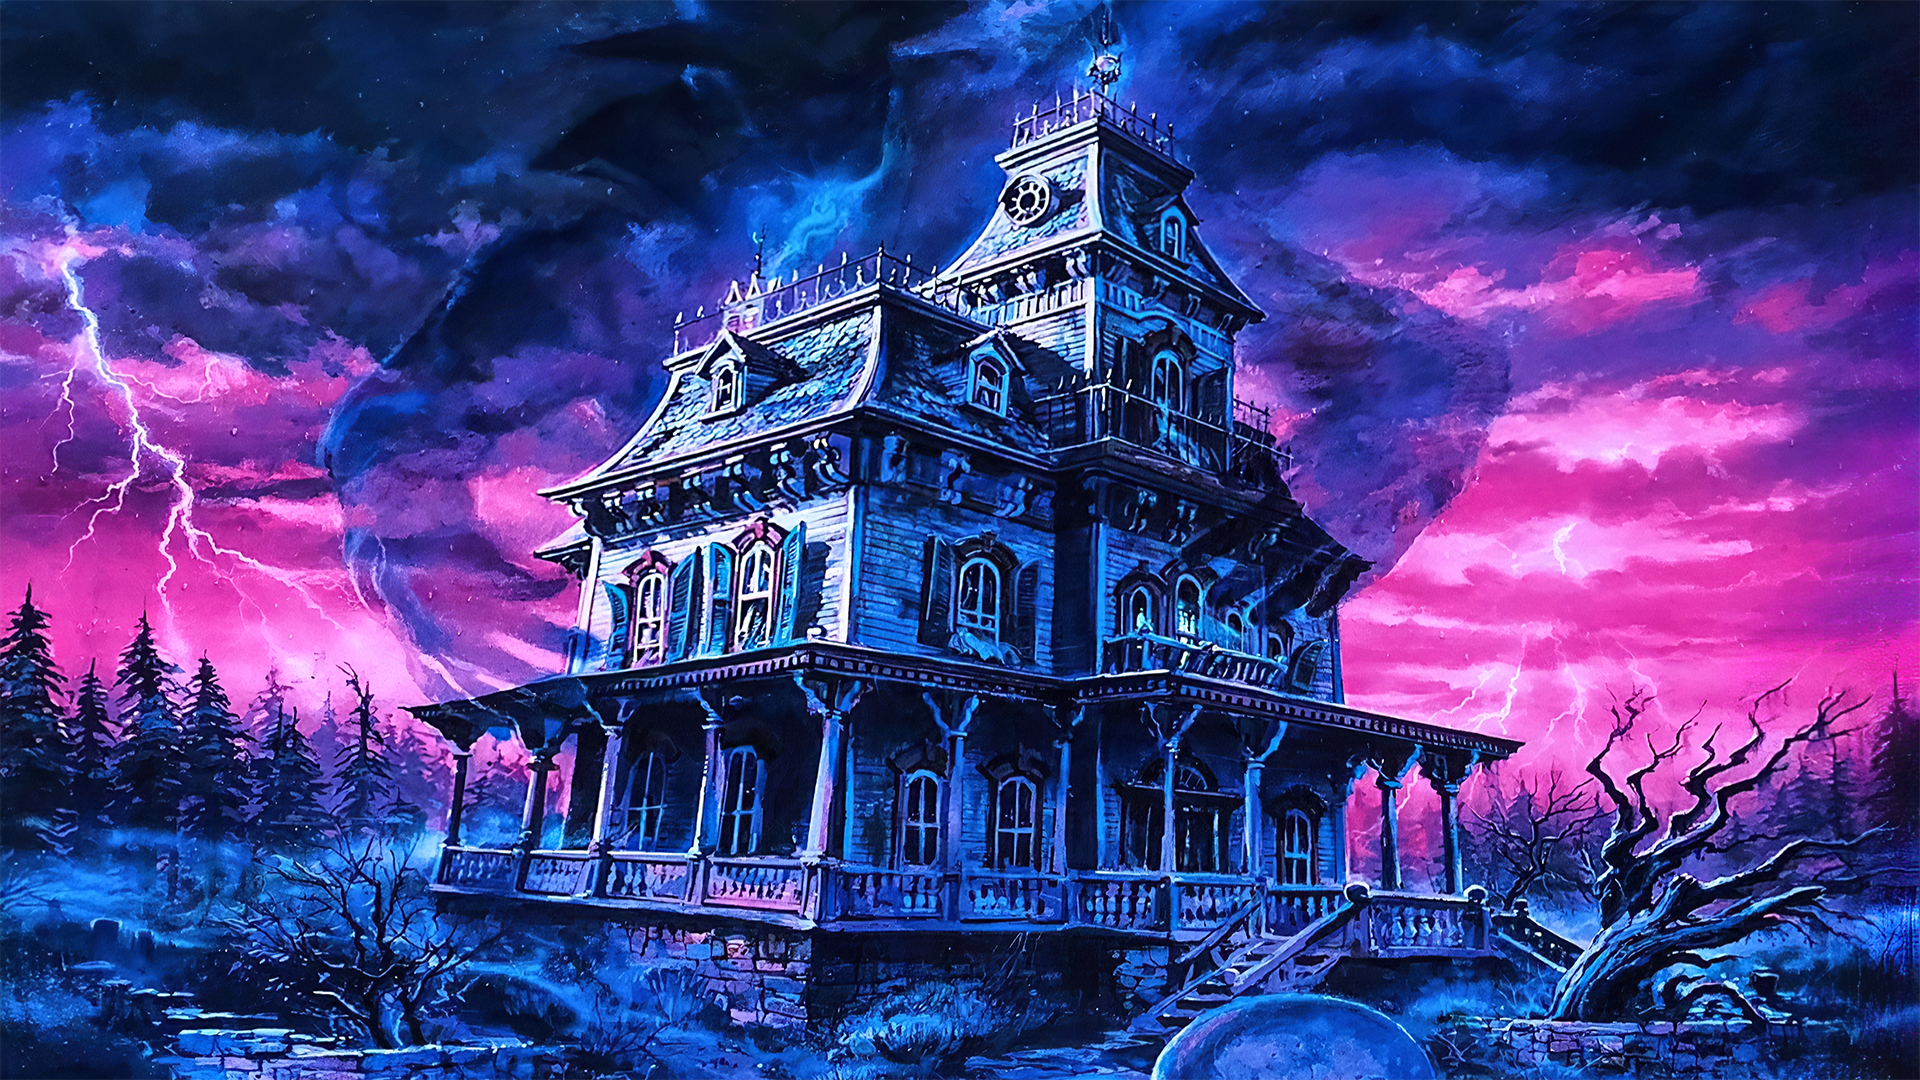 Phantom Manor Frontierland by Dan Goozee [1920x1080]